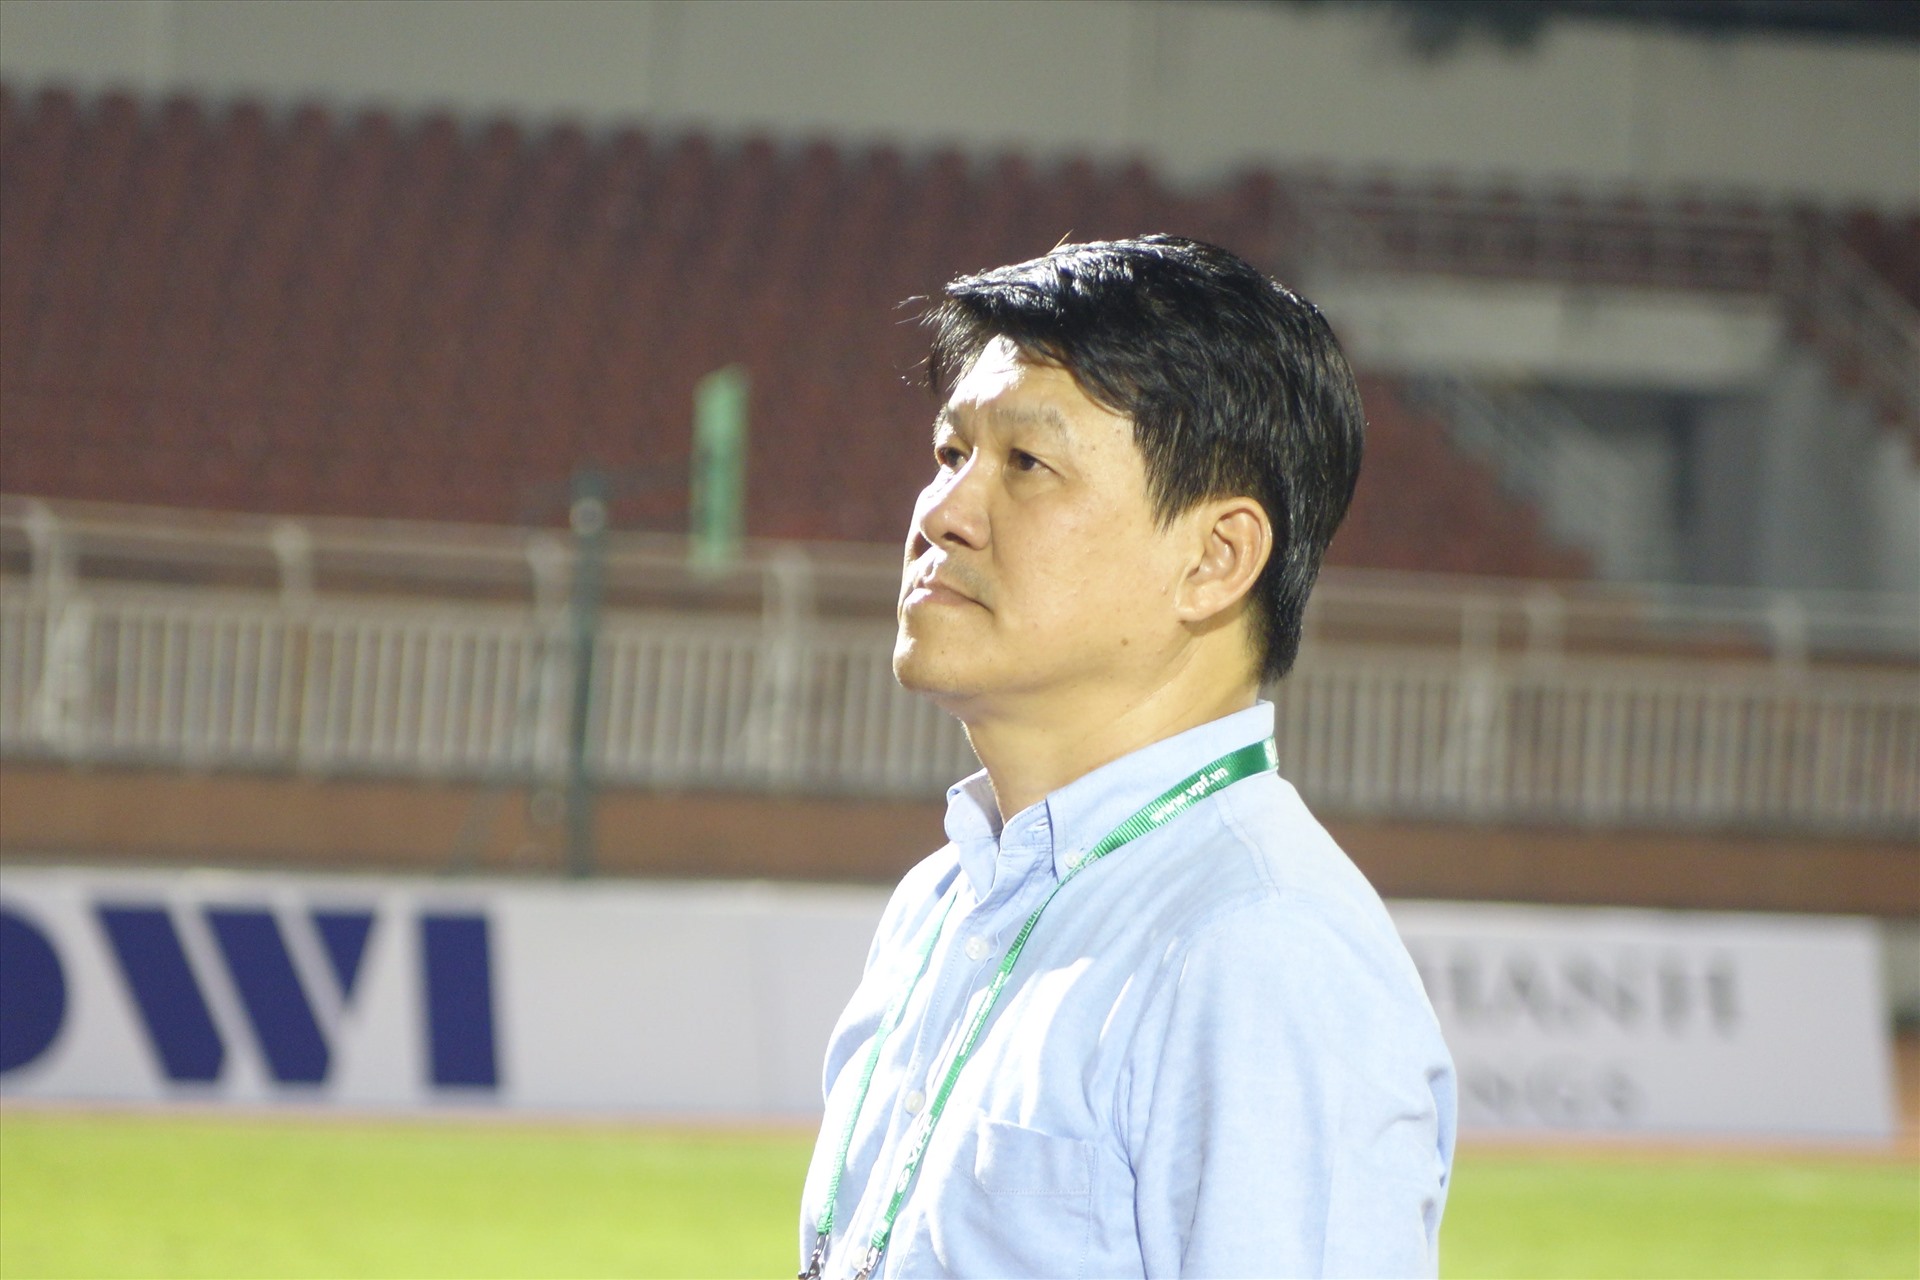 Ông Vũ Tiến Thành không phải là phương án dài hơi cho vị trí huấn luyện viên của CLB Sài Gòn. Ảnh: Nguyễn Đăng.